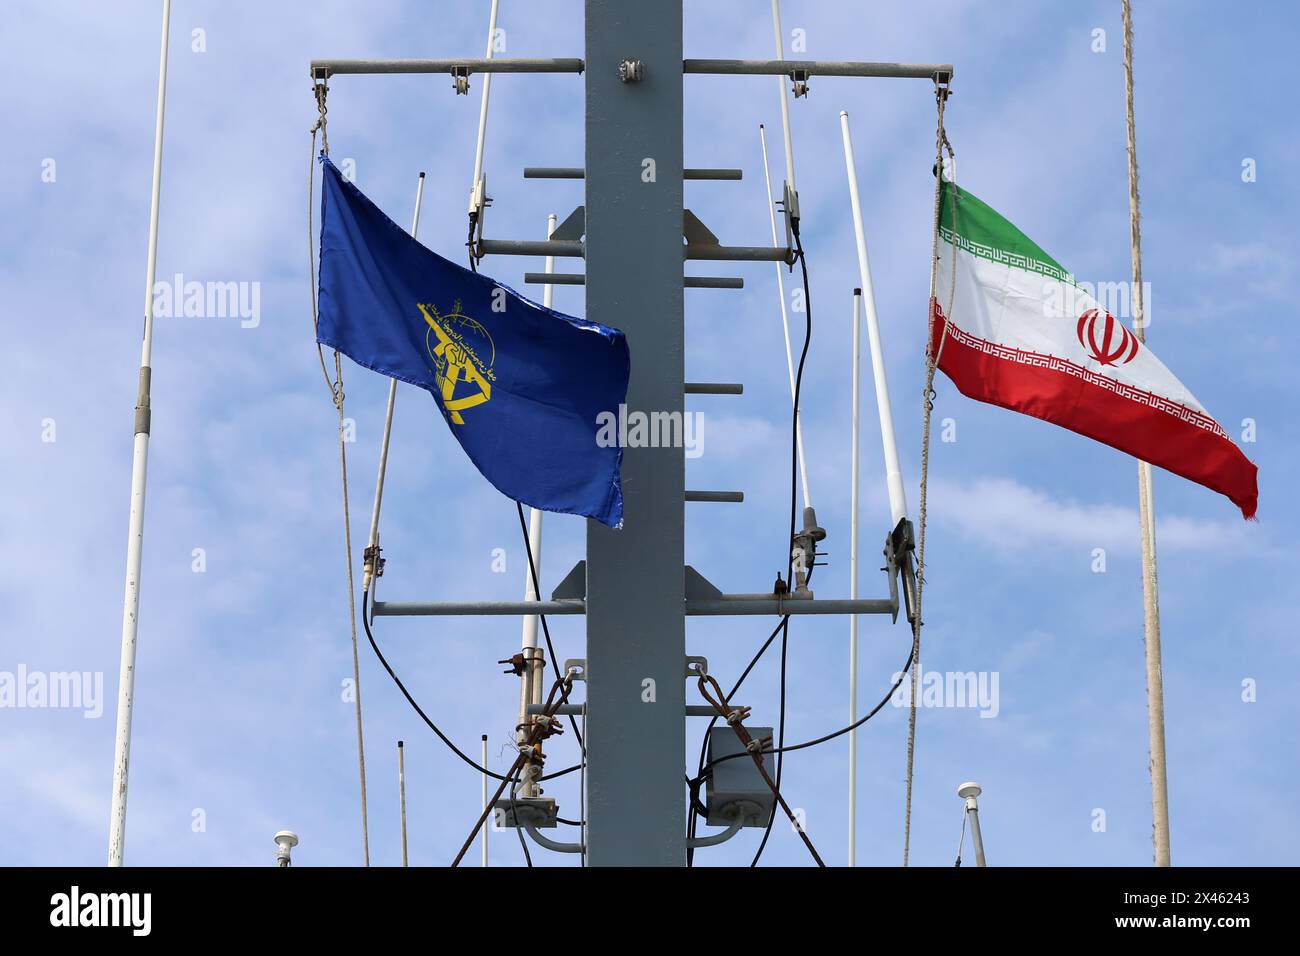 29 aprile 2024, Golfo Persico, Bushehr, Iran: le bandiere iraniane e dell'IRGC ondeggiano su una nave da guerra IRIS 112 Shahid (martire) Salimi del corpo delle guardie rivoluzionarie islamiche (IRGC) nel Golfo Persico durante la parata marina dell'IRGC per commemorare la giornata nazionale del Golfo Persico nei pressi della centrale nucleare di Bushehr nella città portuale di Bushehr, provincia di Bushehr, nel sud dell'Iran. L'Iran celebra l'anniversario della liberazione del sud del paese dall'occupazione portoghese nel 1622 come "giornata nazionale del Golfo Persico" a Bushehr il 29 aprile 2024. La data coincide con l'anniversario di un campai militare di successo Foto Stock